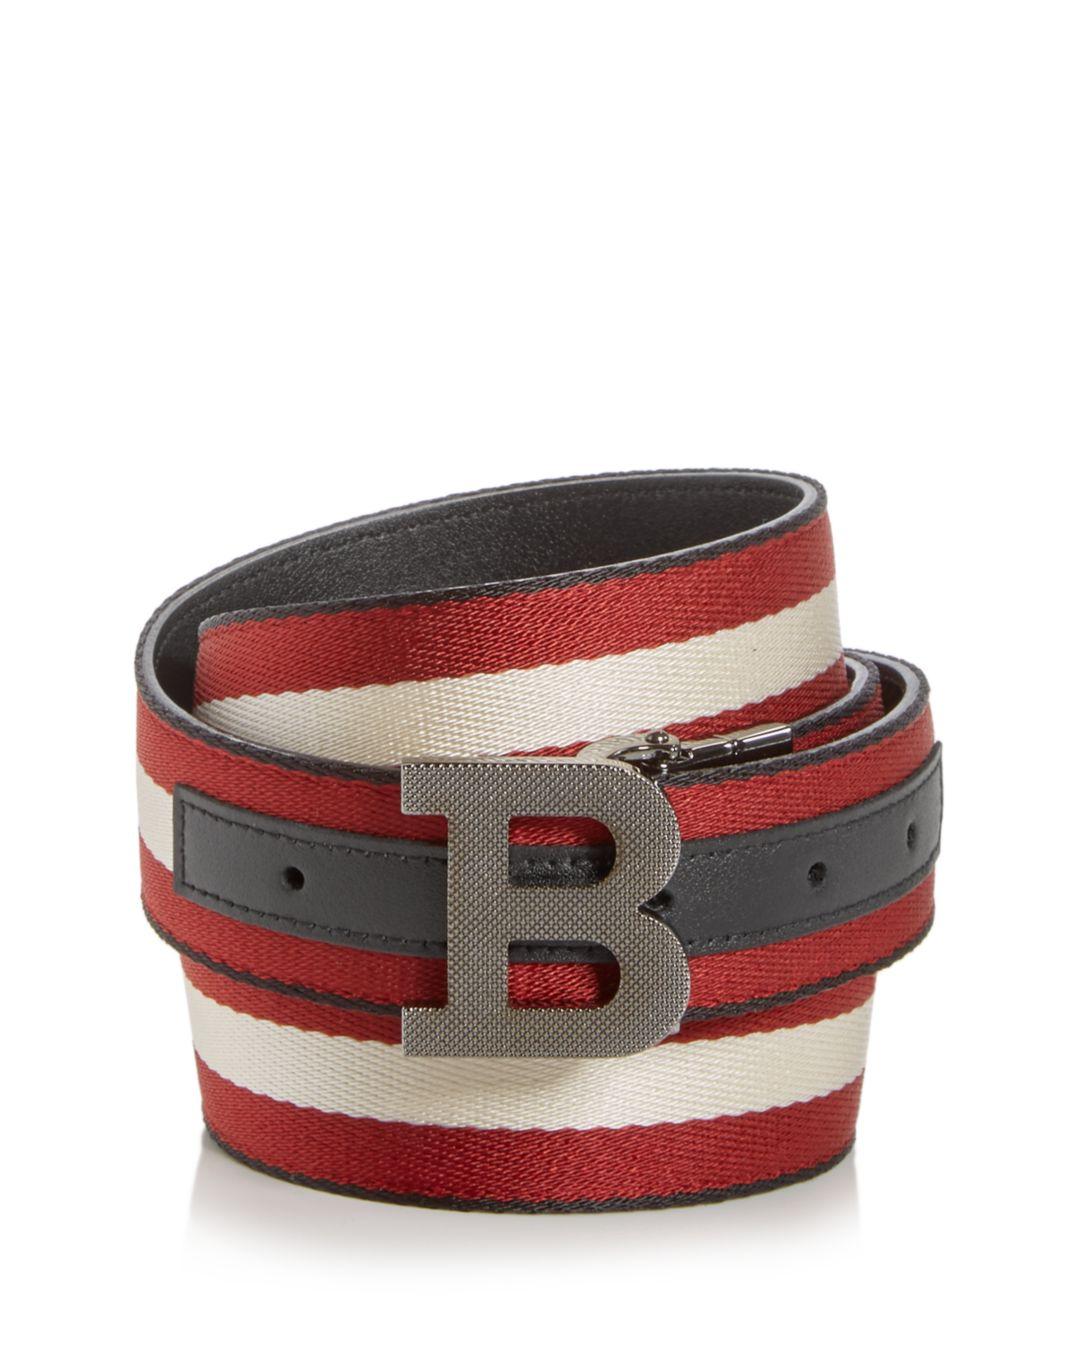 Bally Leather Men's Logo Buckle Webbing Stripe Belt in Black/Bone/Red ...